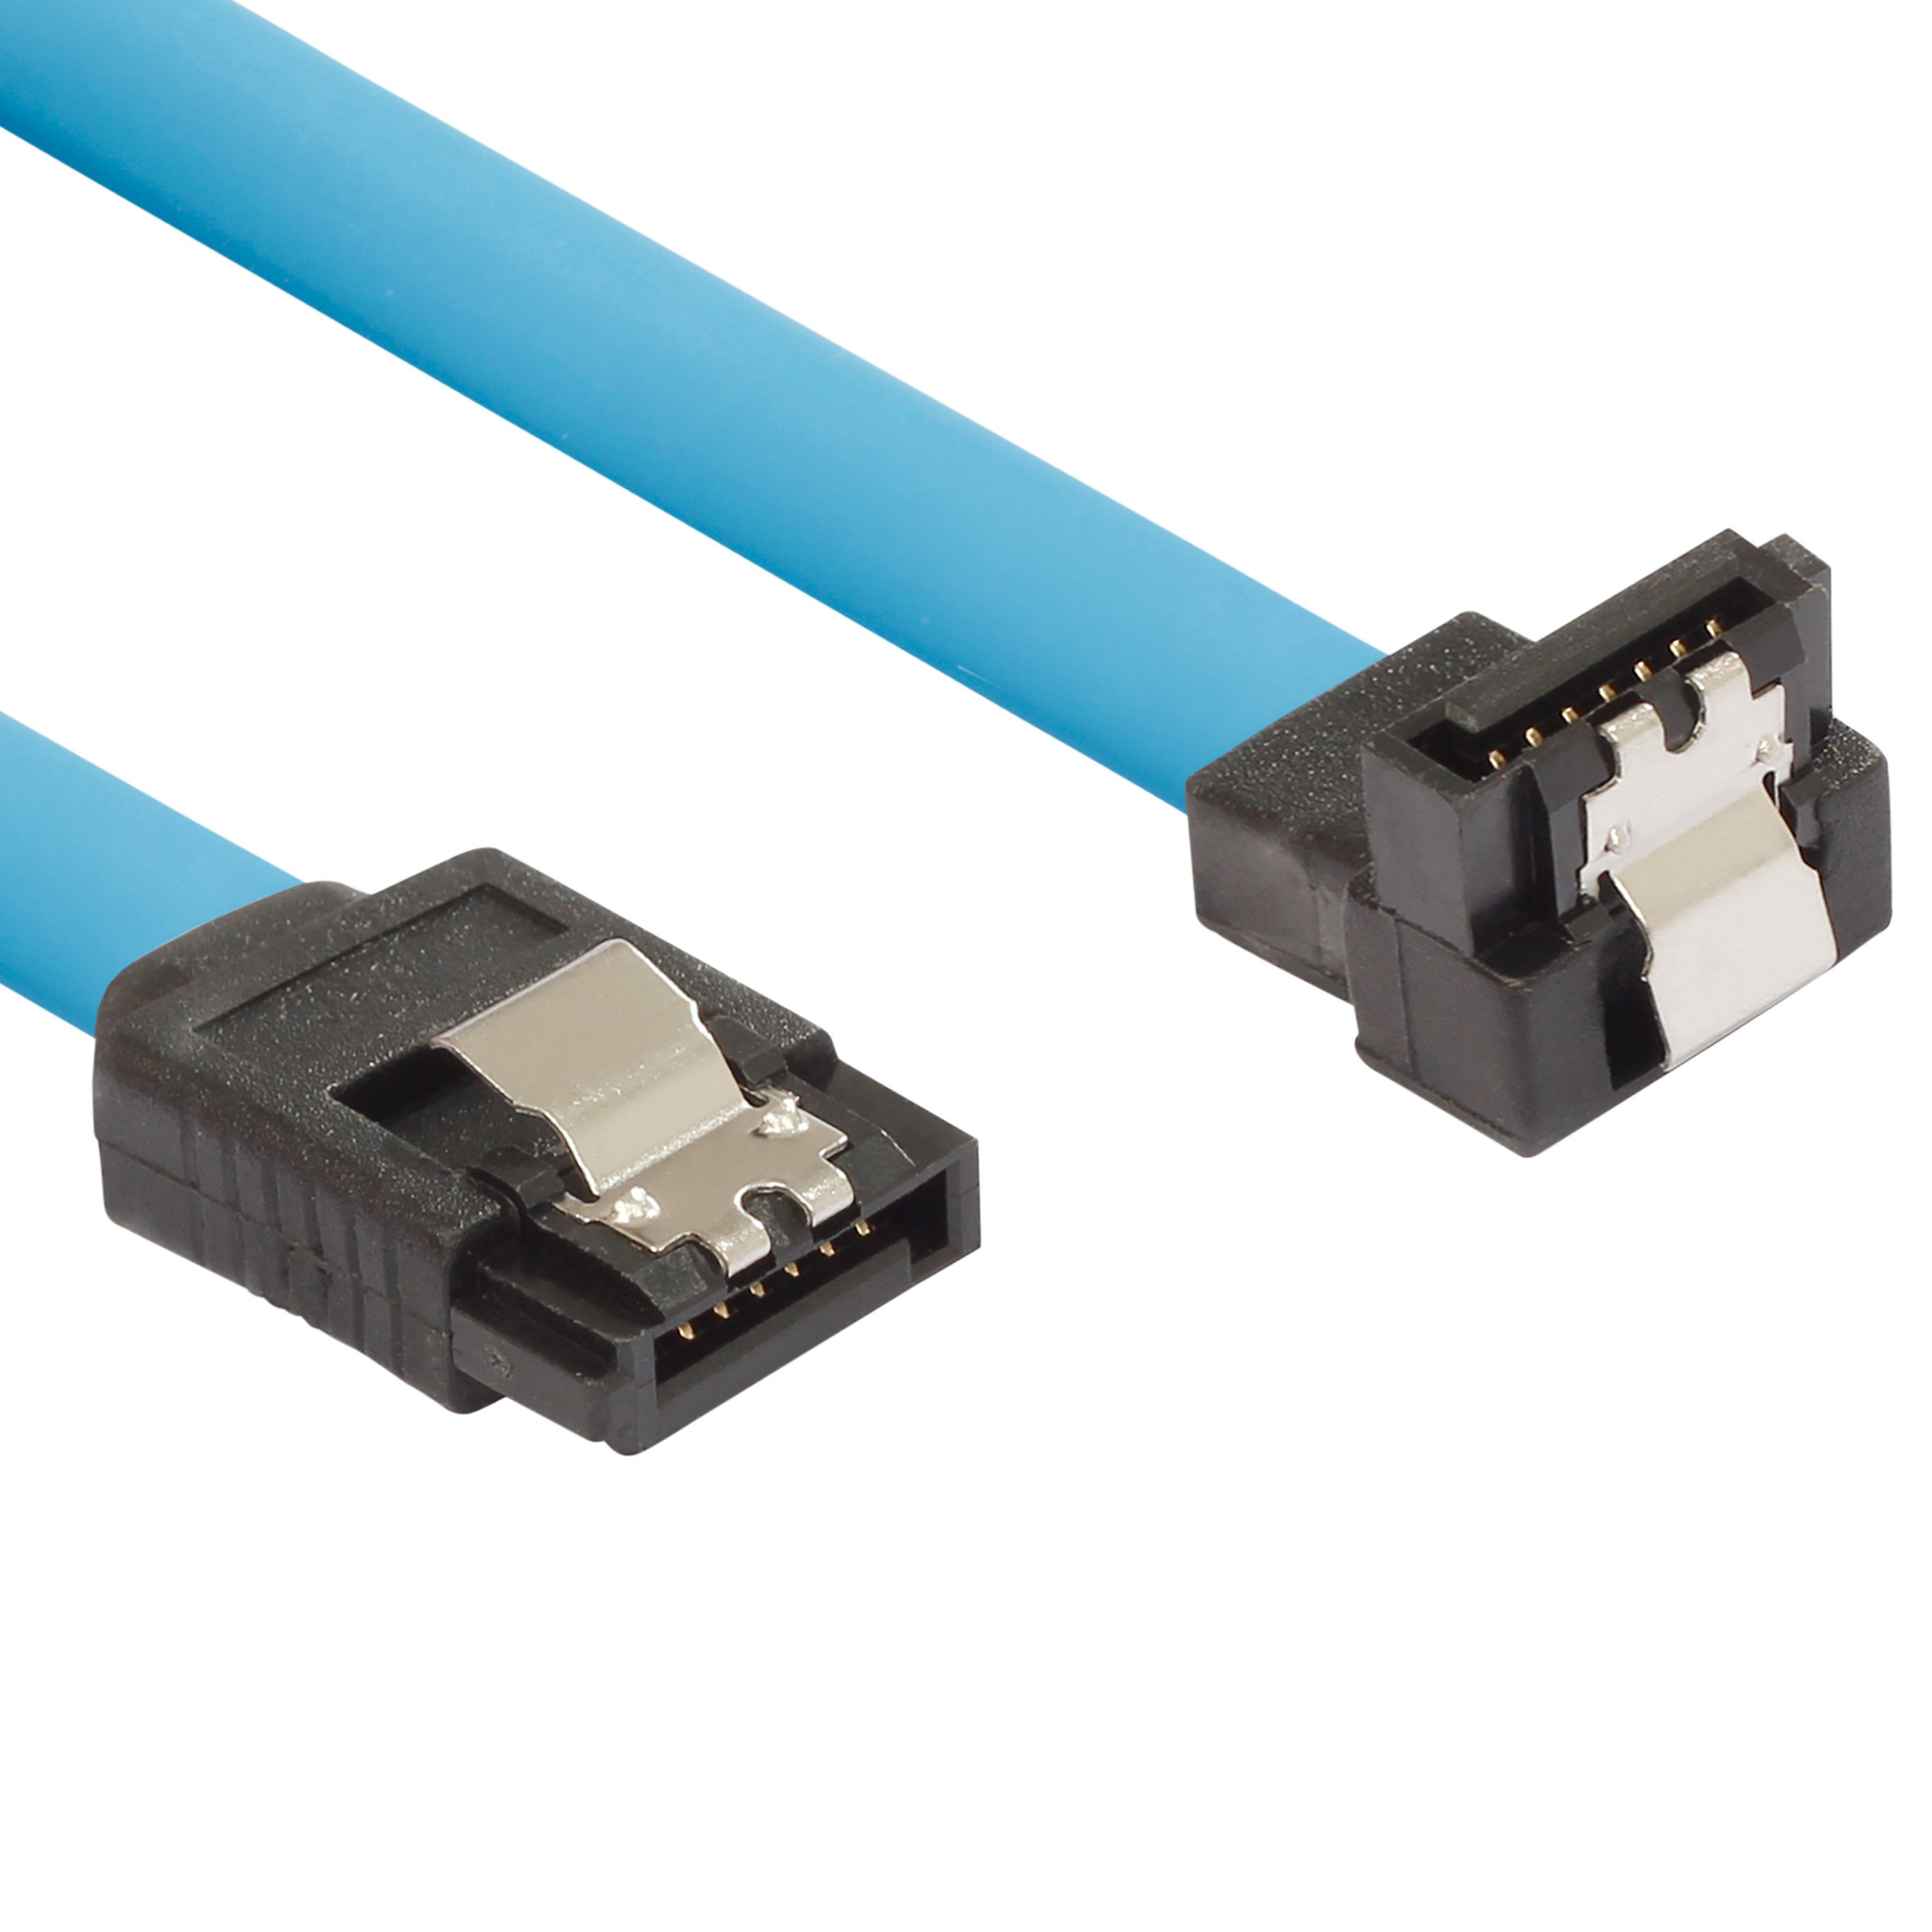 Sata 3 Kabel 0,5 m für SSD/HDD, Stecker gerade/gewinkelt, blau